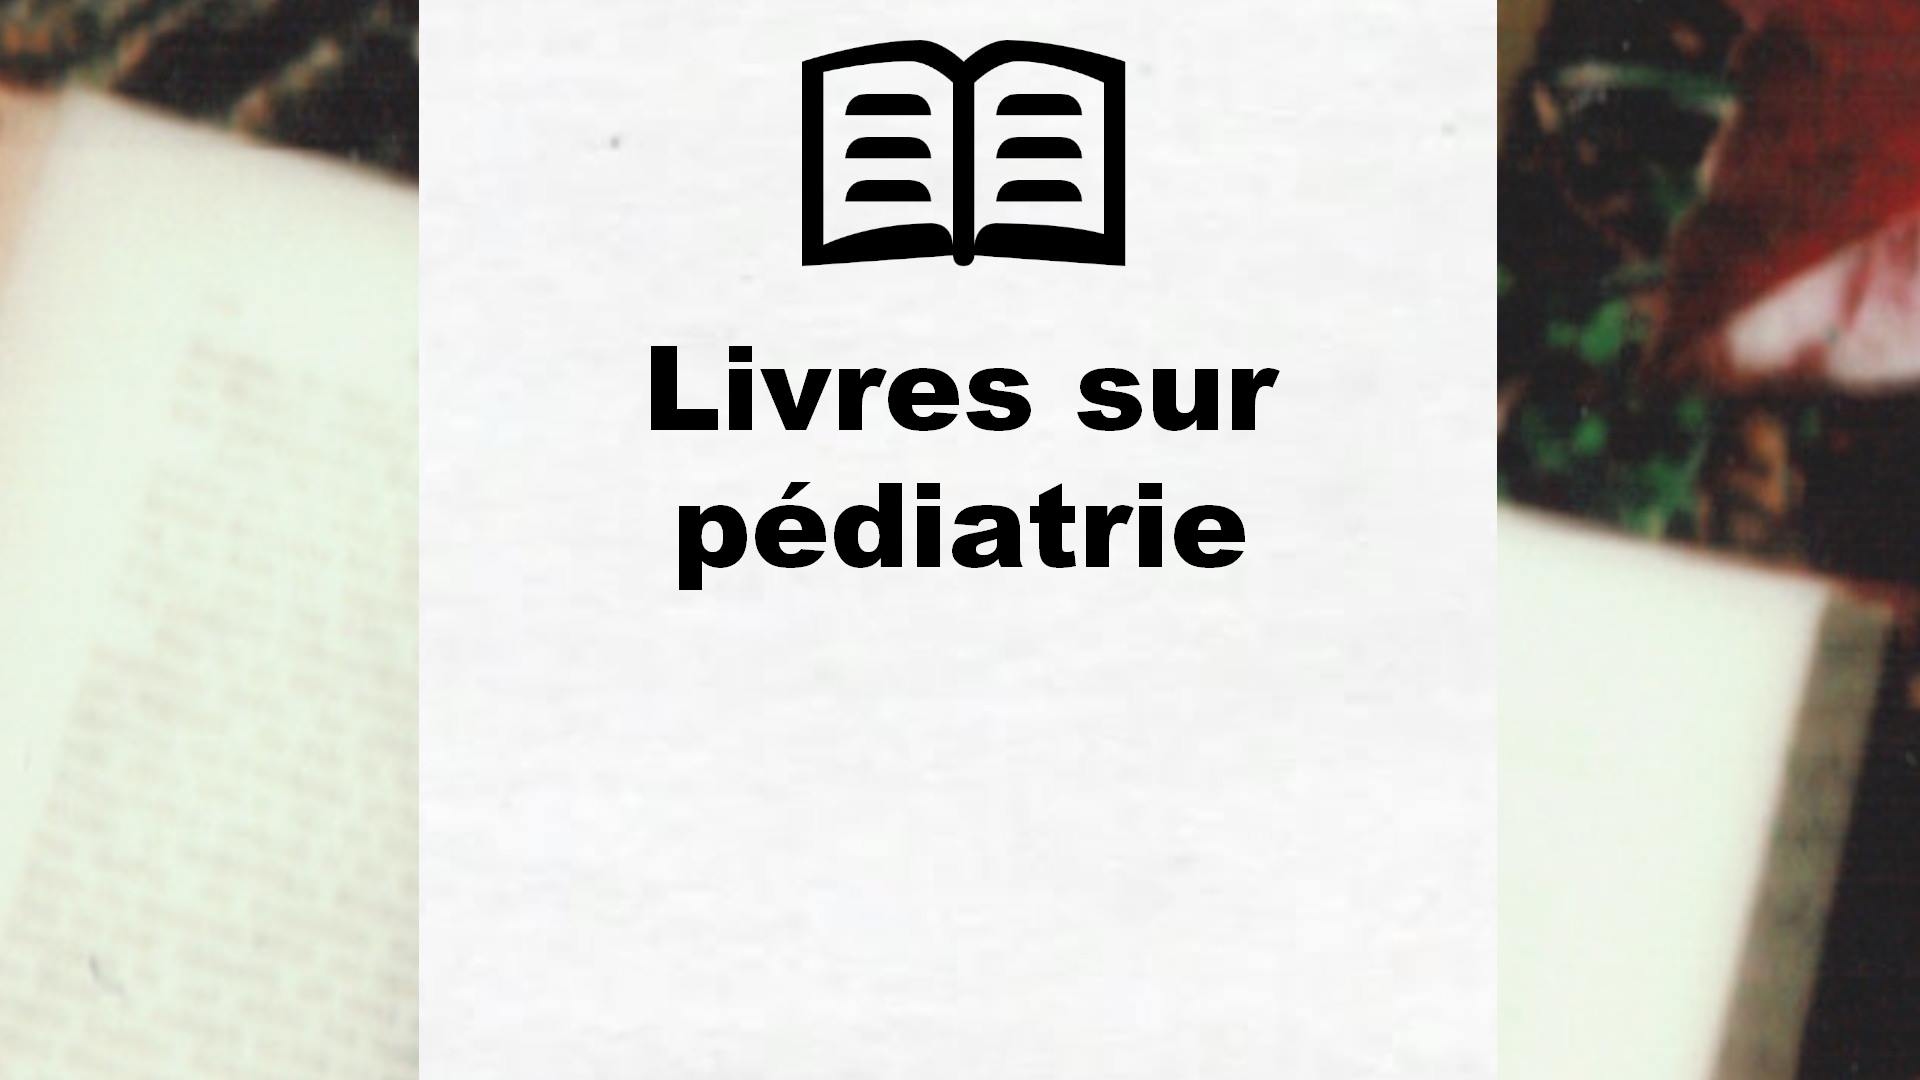 Livres sur pédiatrie